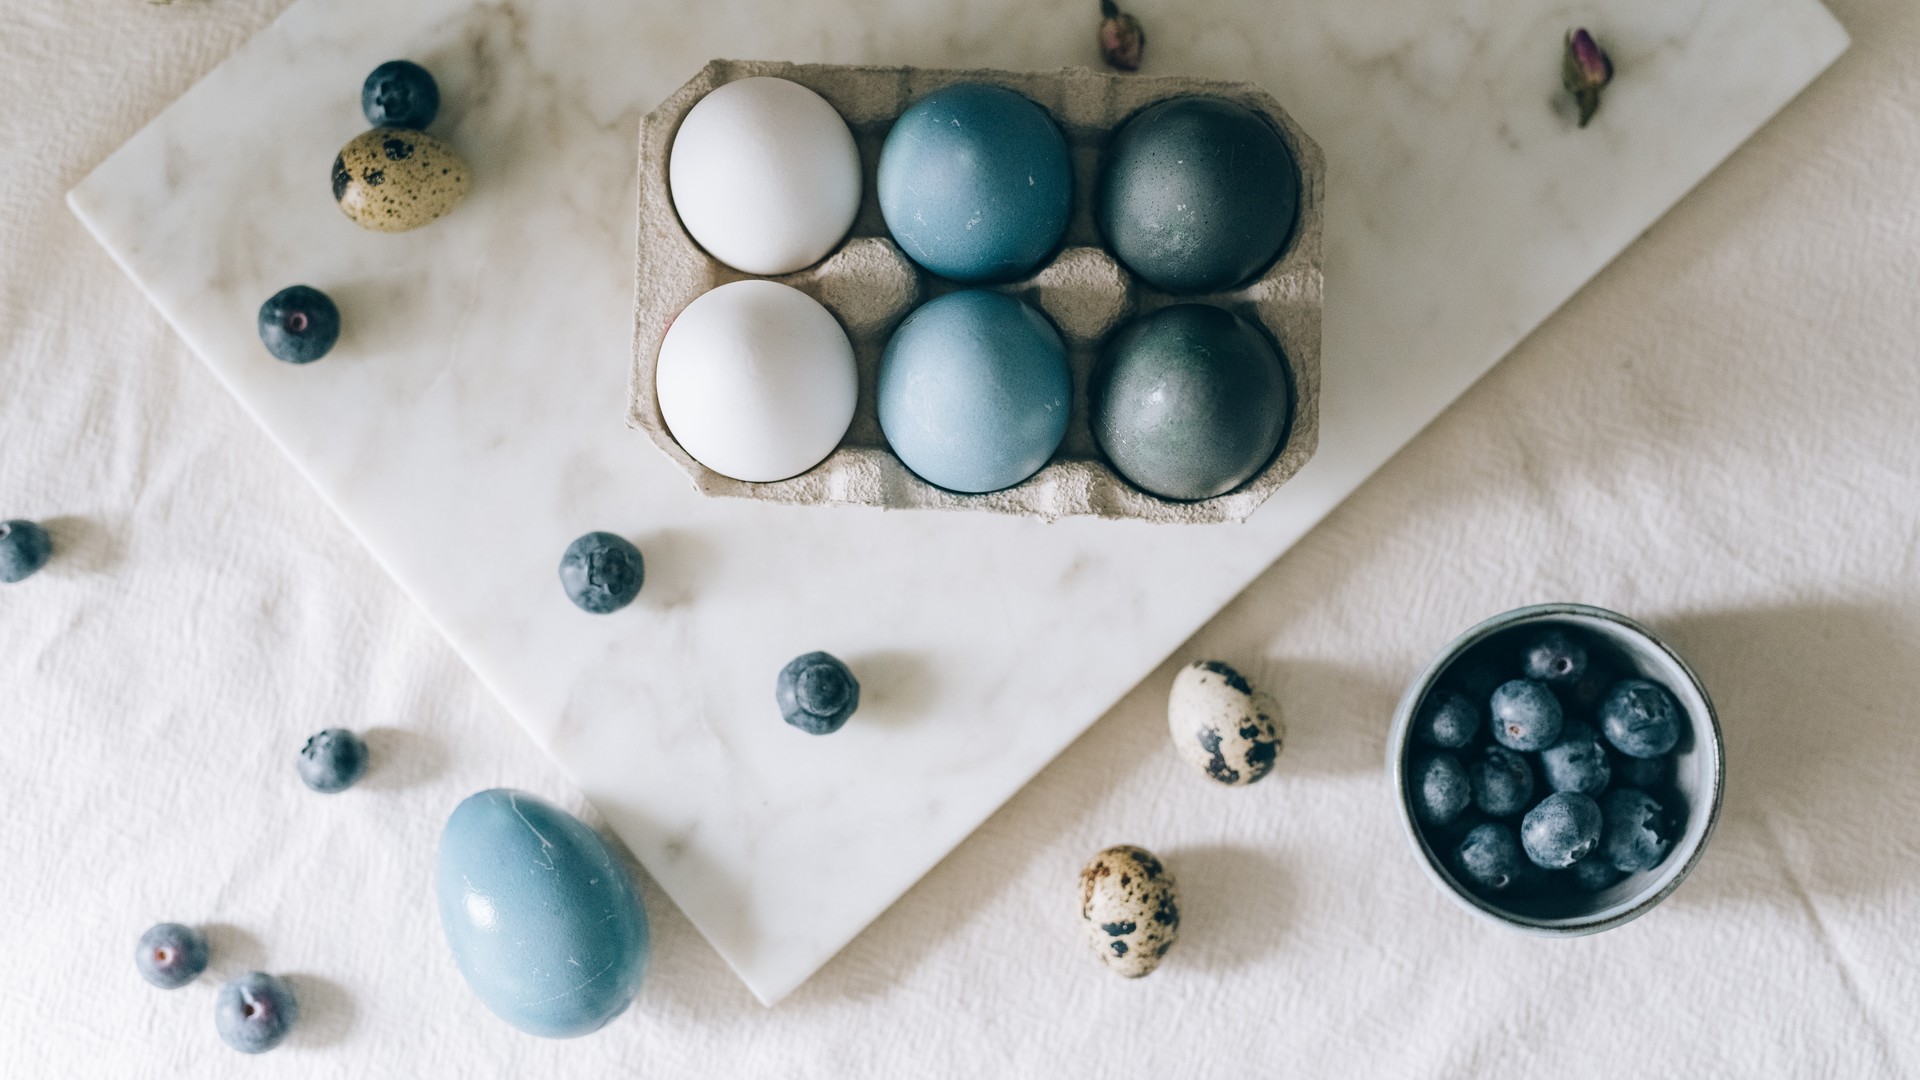 厨房场景鸡蛋与其它食材温馨系列桌面壁纸